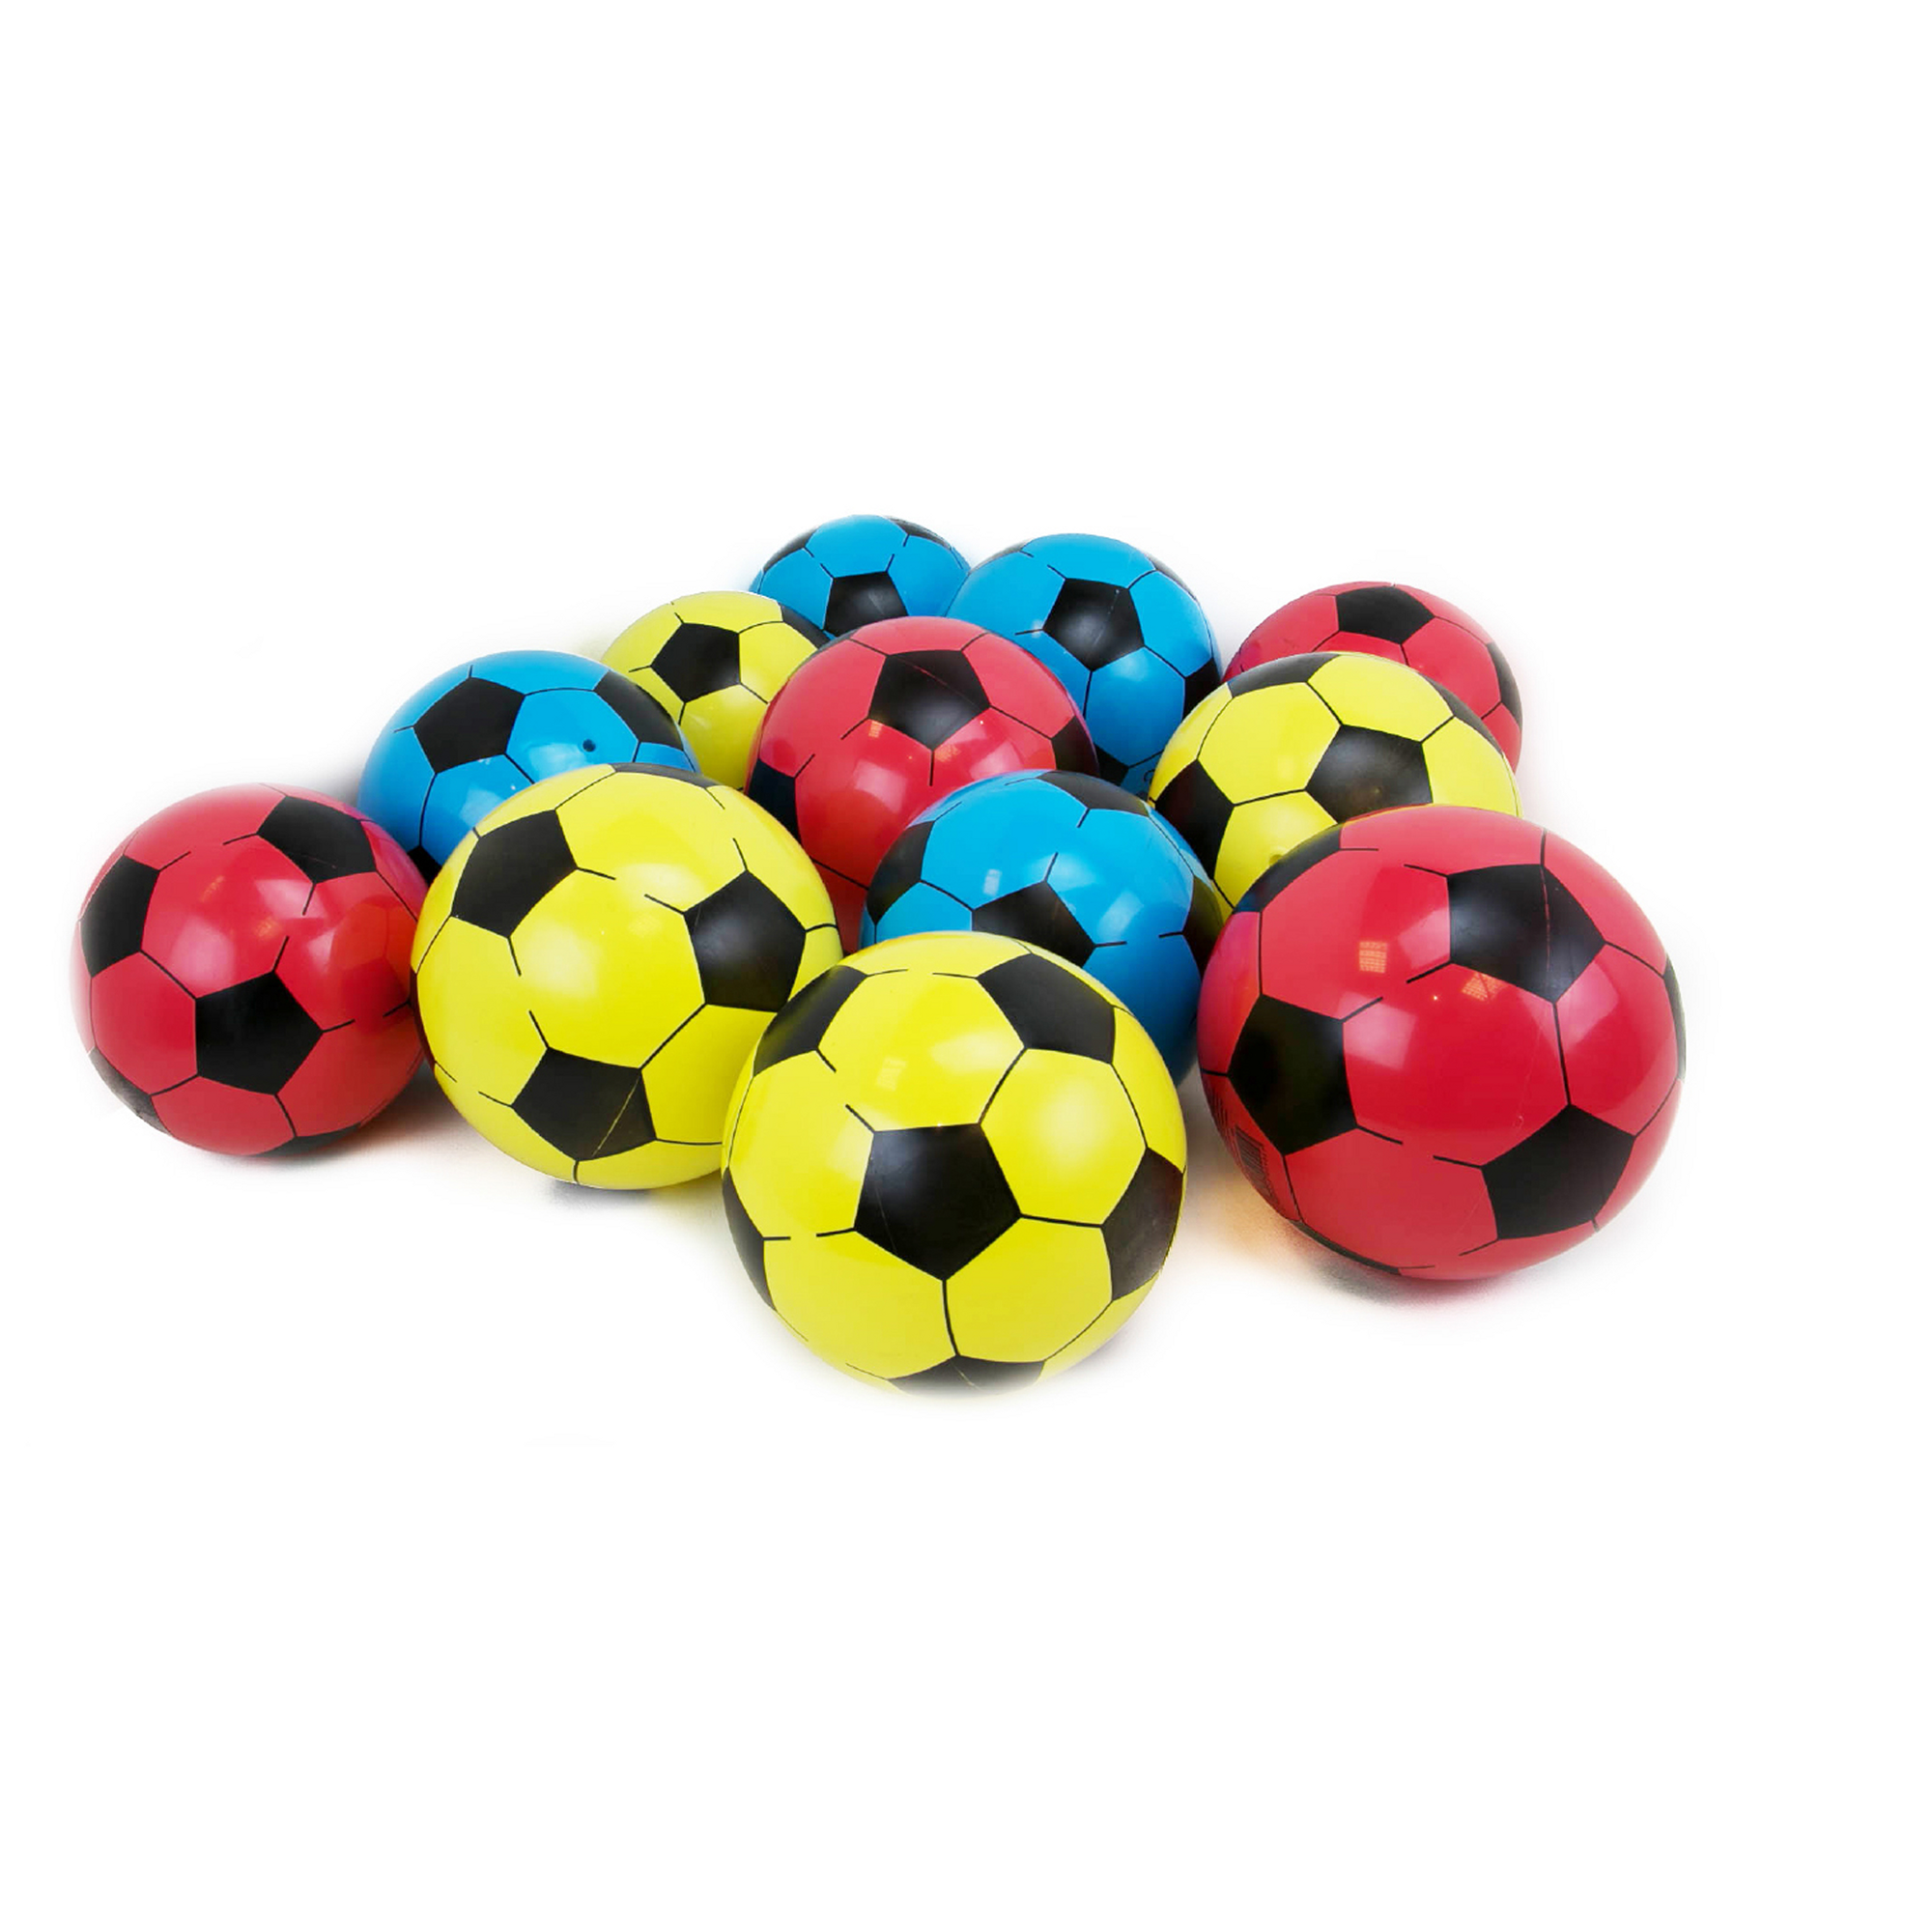 Soccer Ball Packs